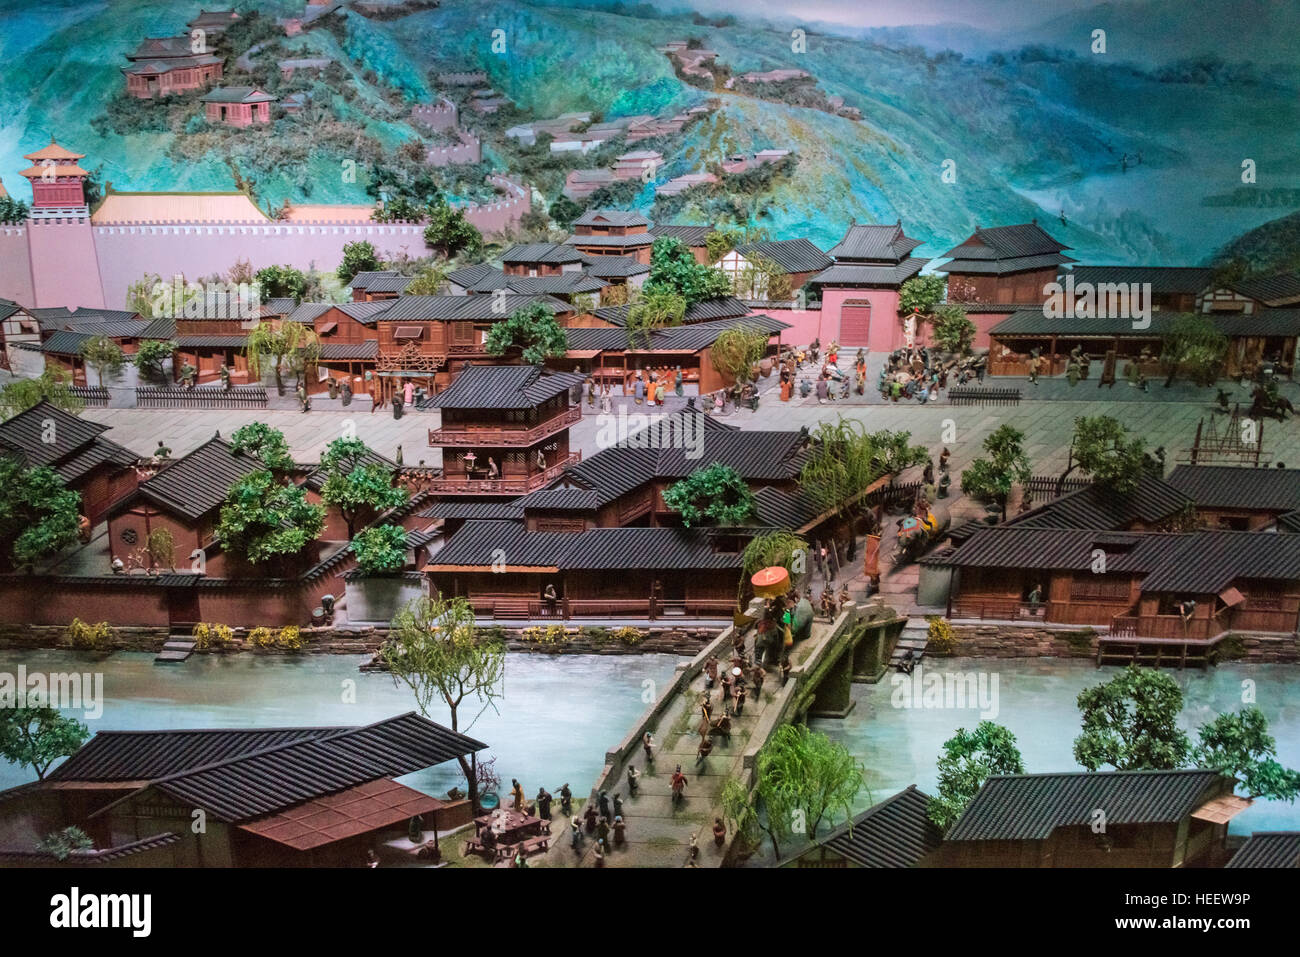 3D model showing old days Hangzhou, Hangzhou, Zhejiang Province, China Stock Photo